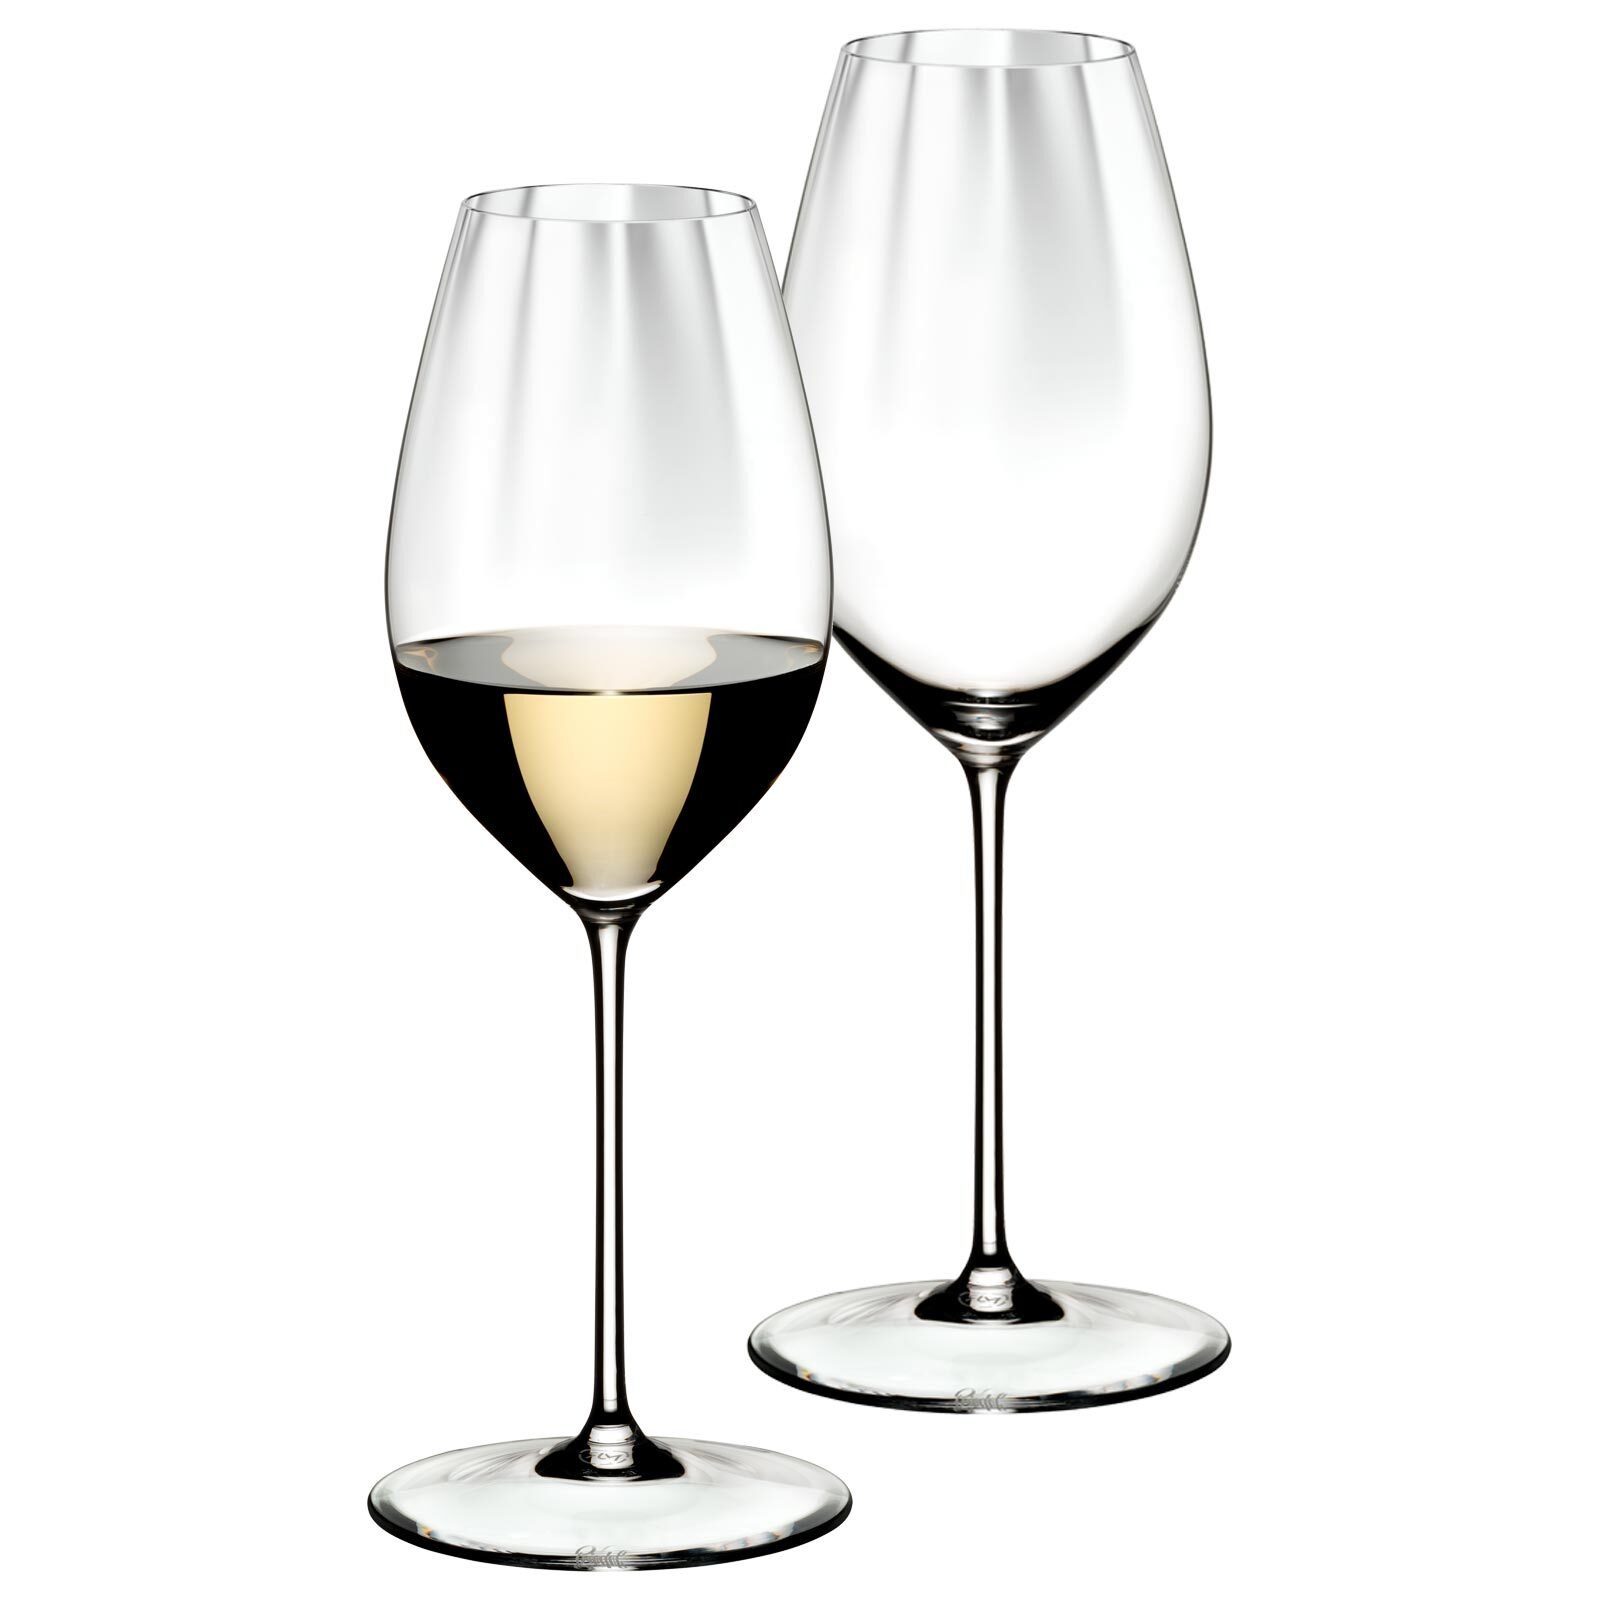 RIEDEL Glas Weißweinglas Performance Sauvignon Blanc Gläser 440 ml 2er Set, Glas